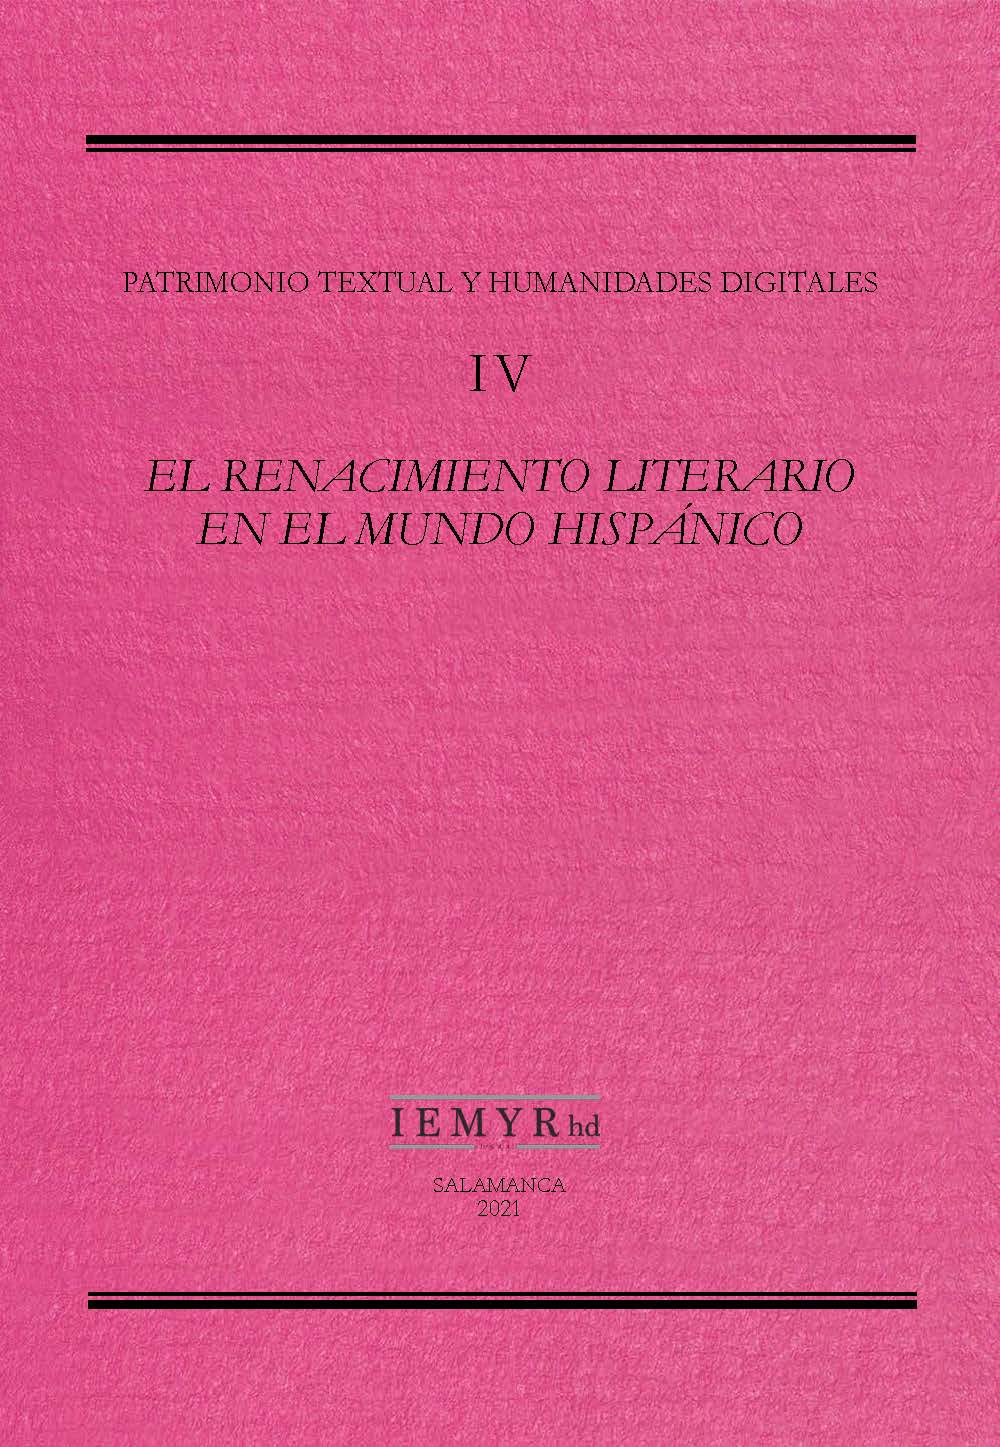 IV. El Renacimiento literario en el mundo hispánico: de la poesía popular a los nuevos géneros del humanismo